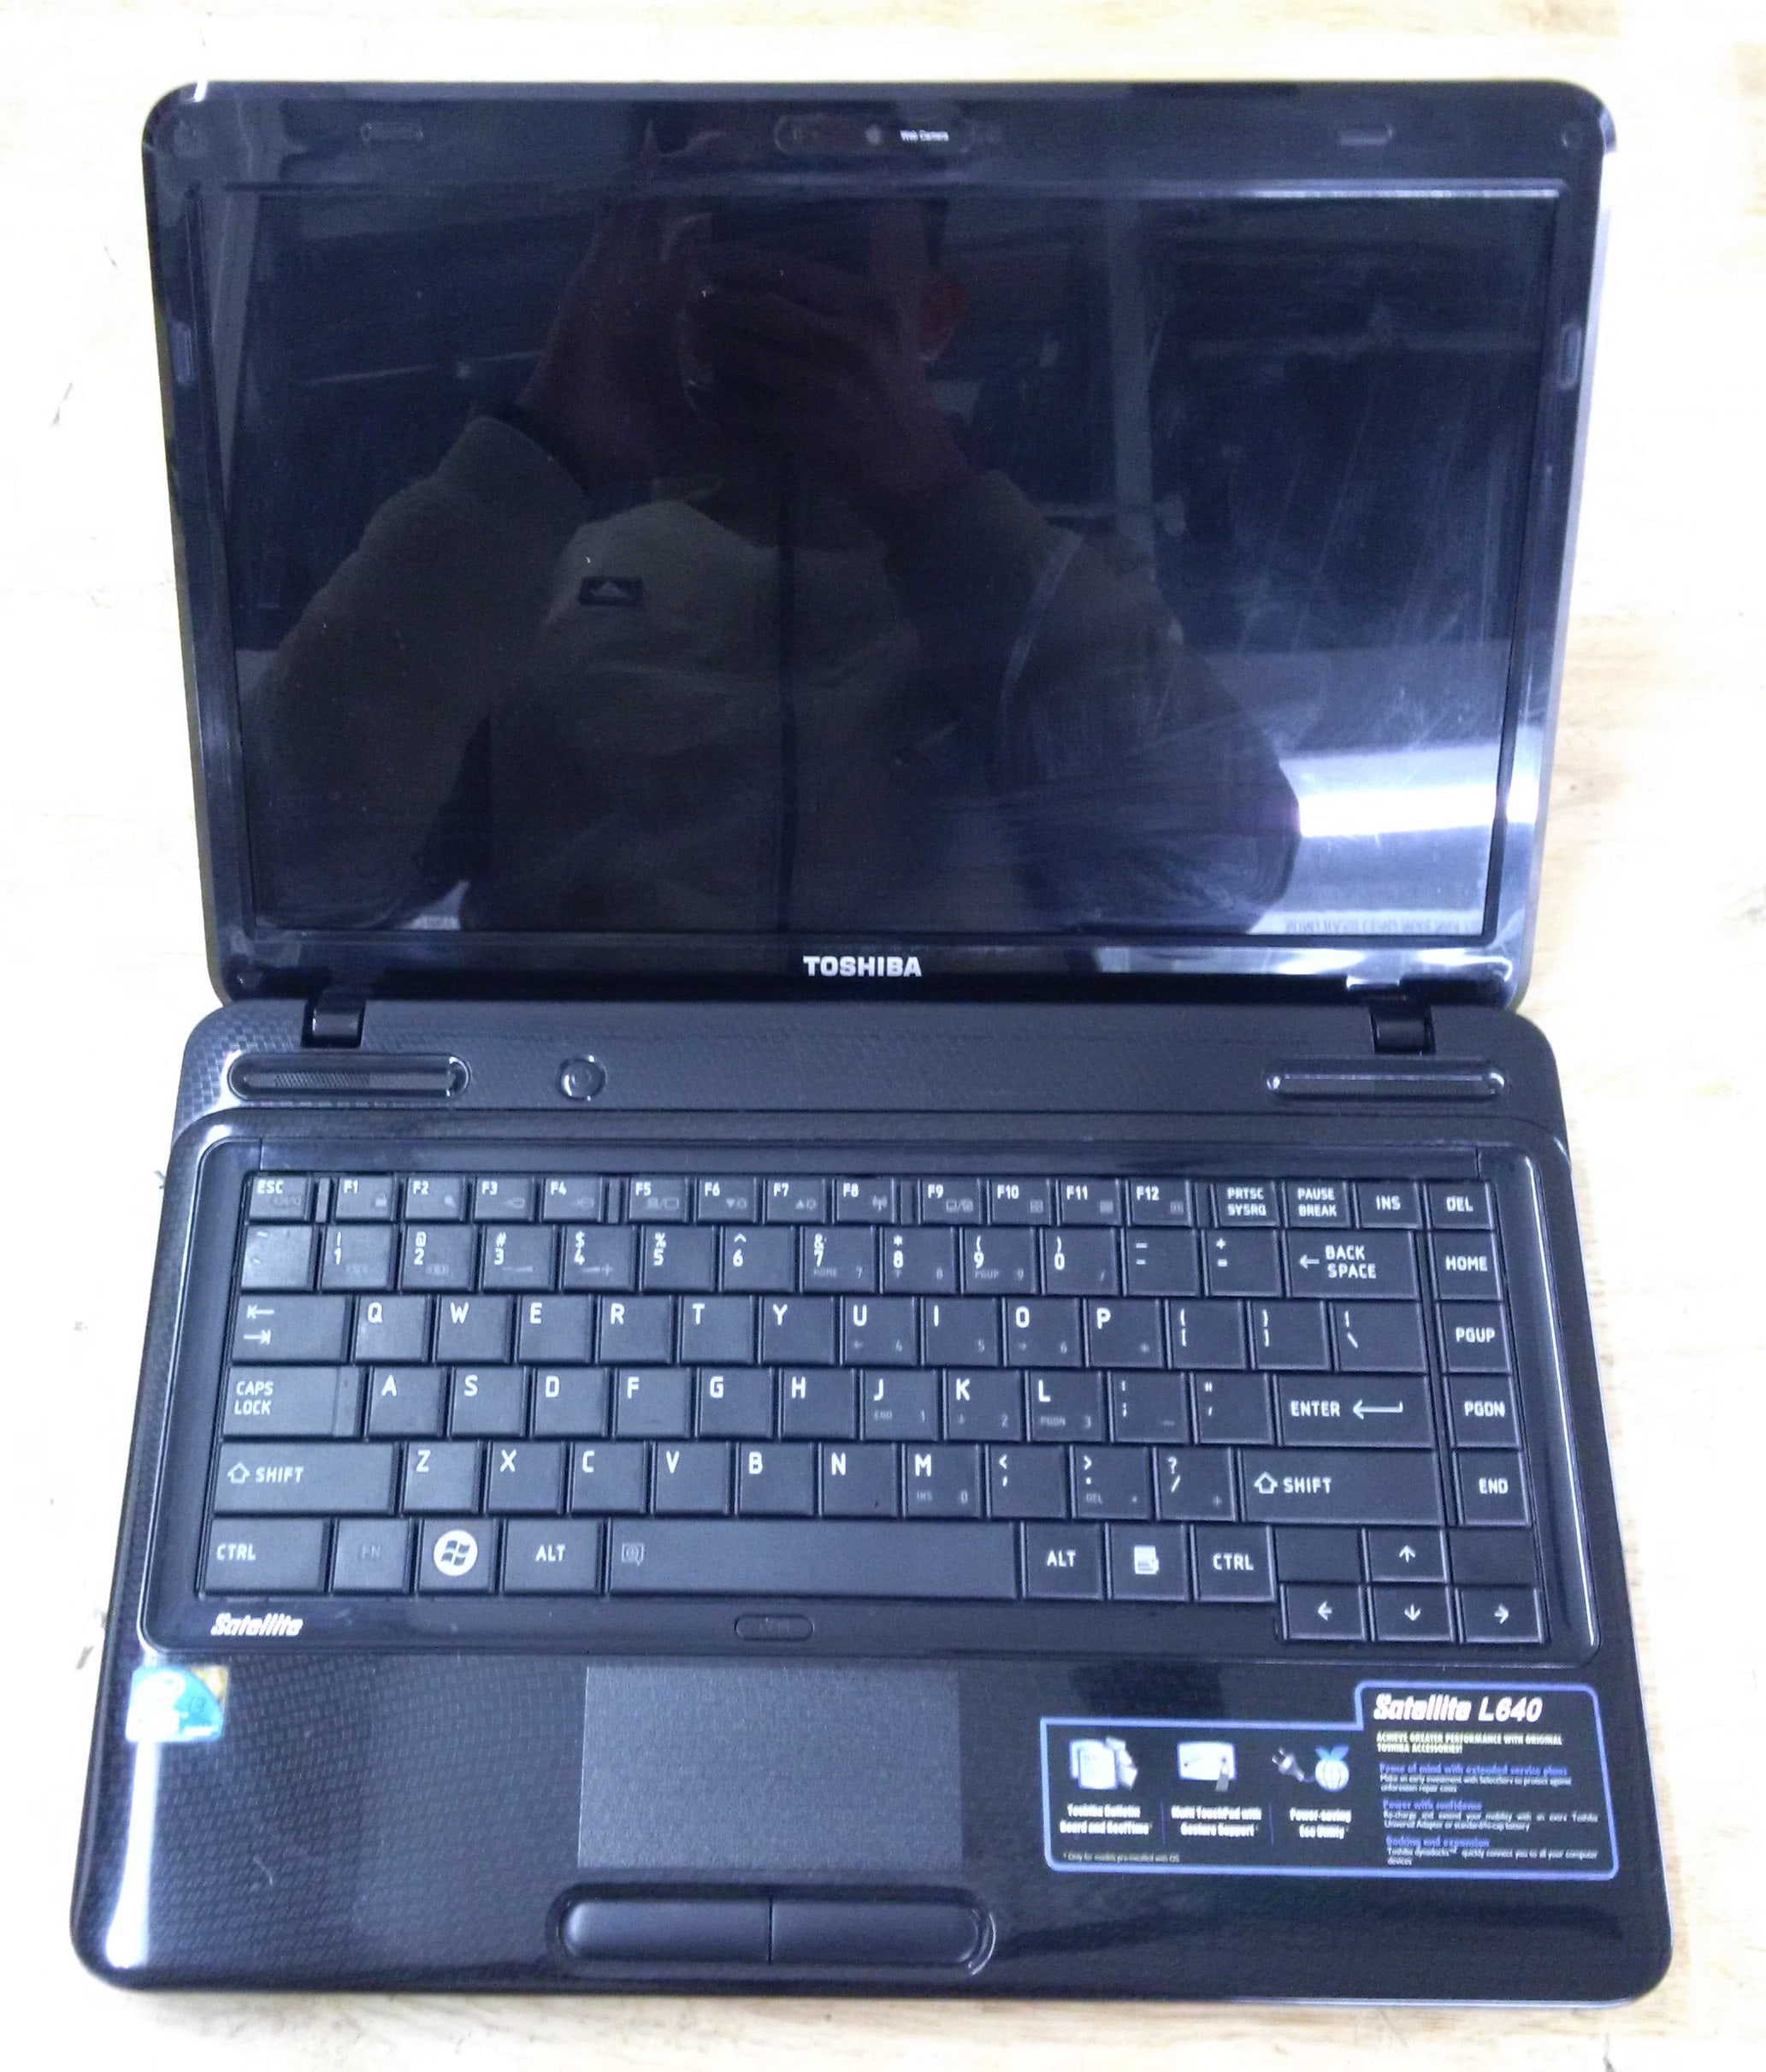 laptop cũ toshiba l640